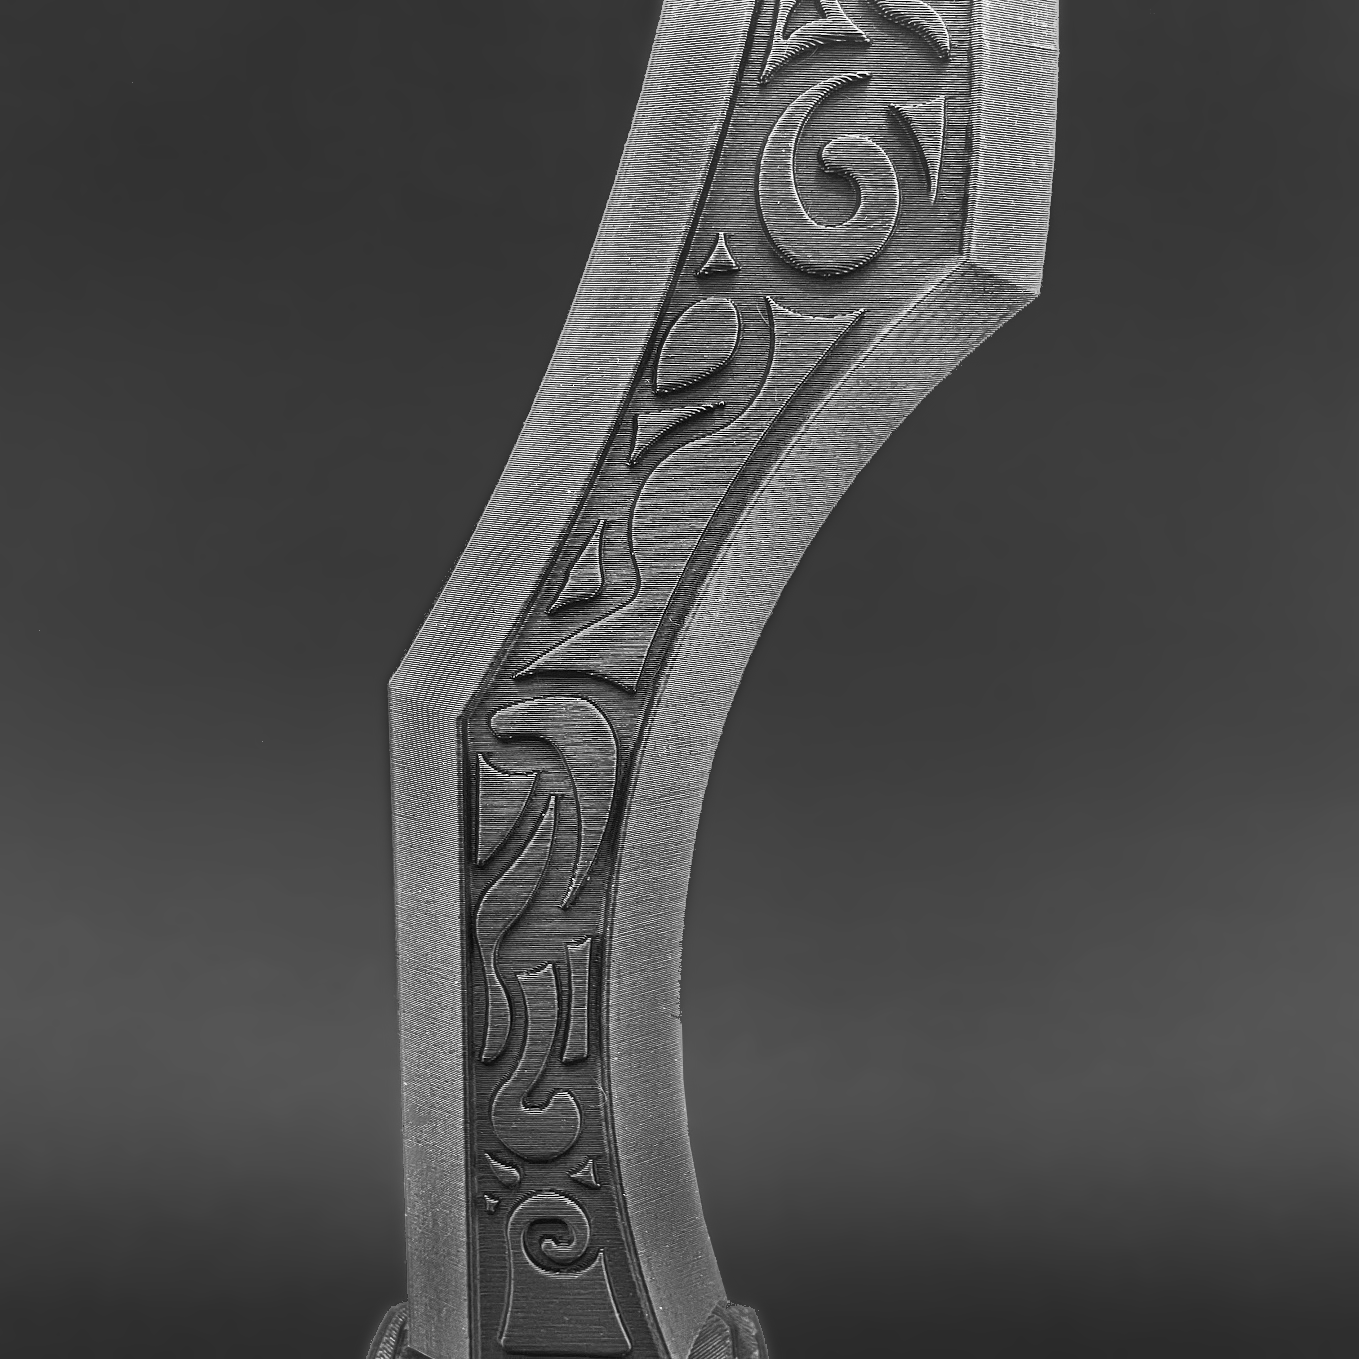 Katarina's Dagger